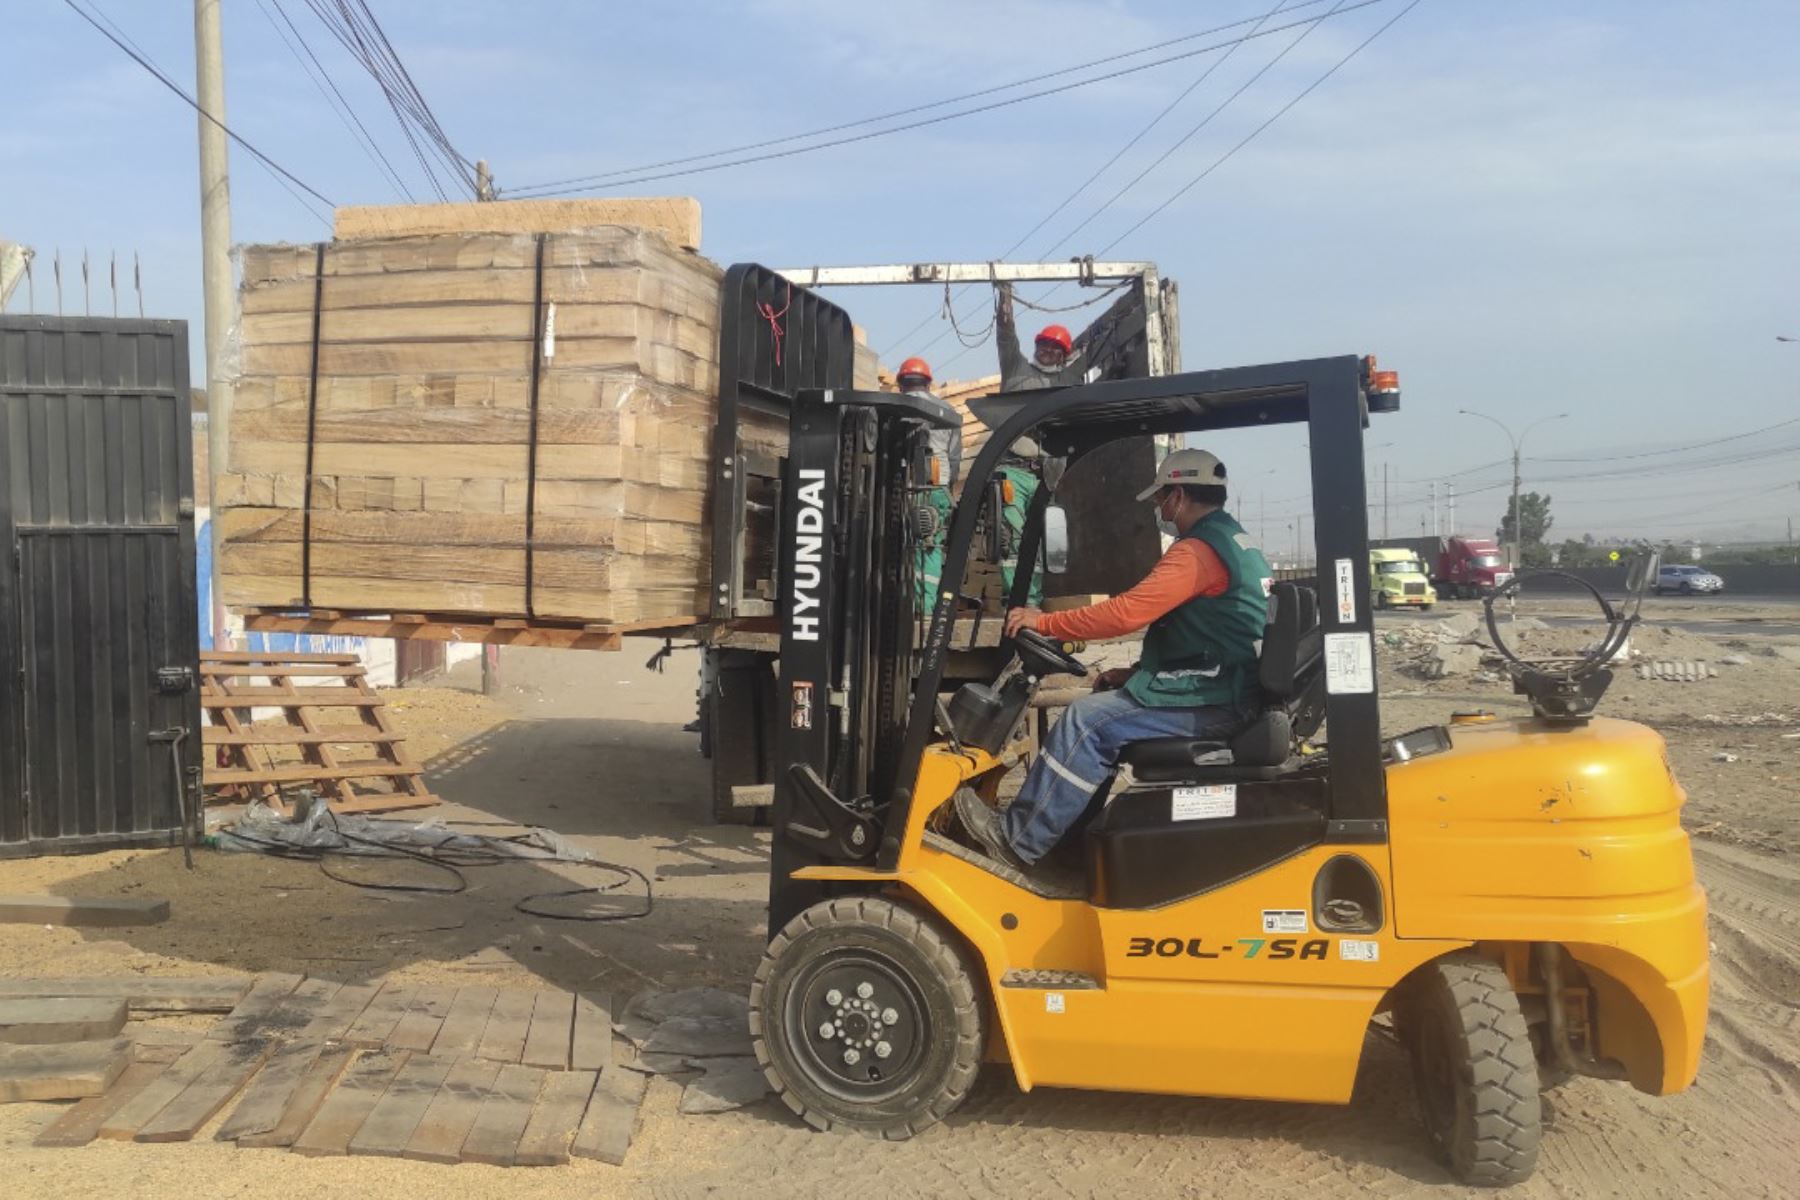 La madera transferida por el Serfor facilitará la preparación de alimentos para familias vulnerables. Foto: ANDINA/difusión.